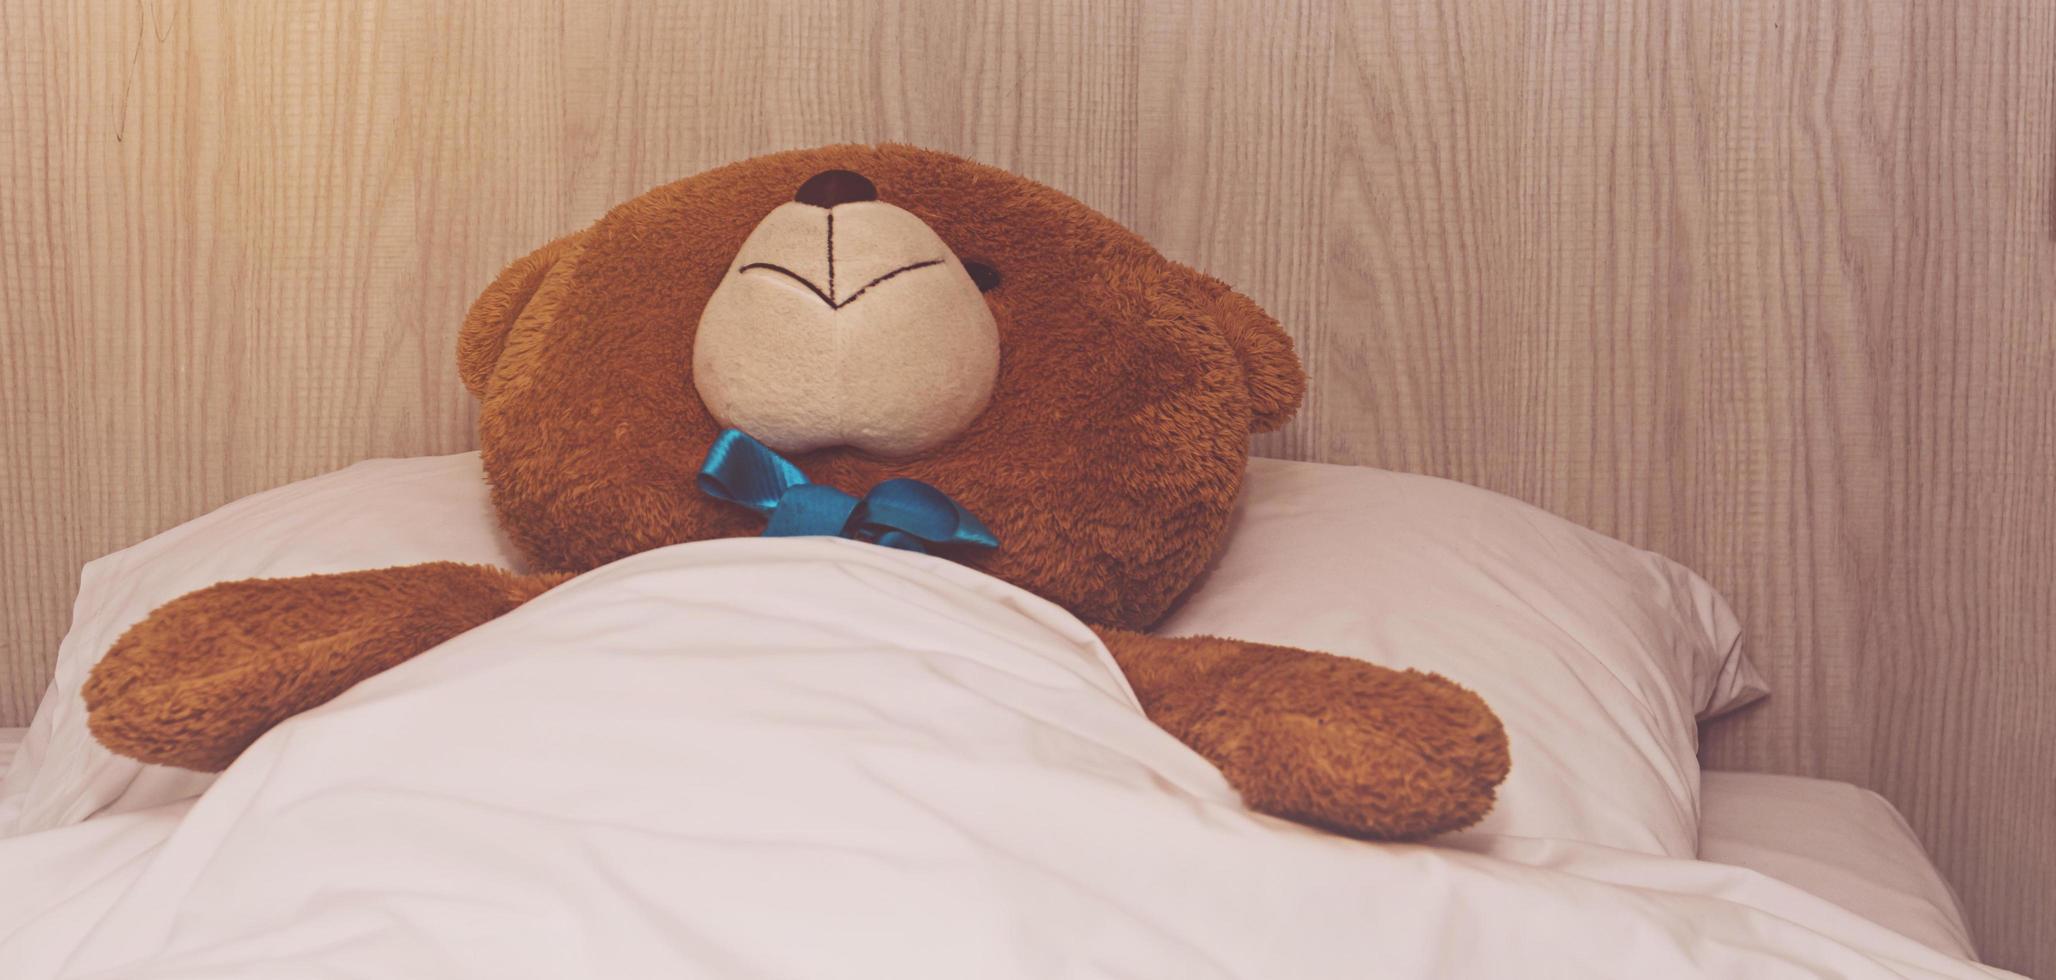 Teddybär liegt im Bett foto